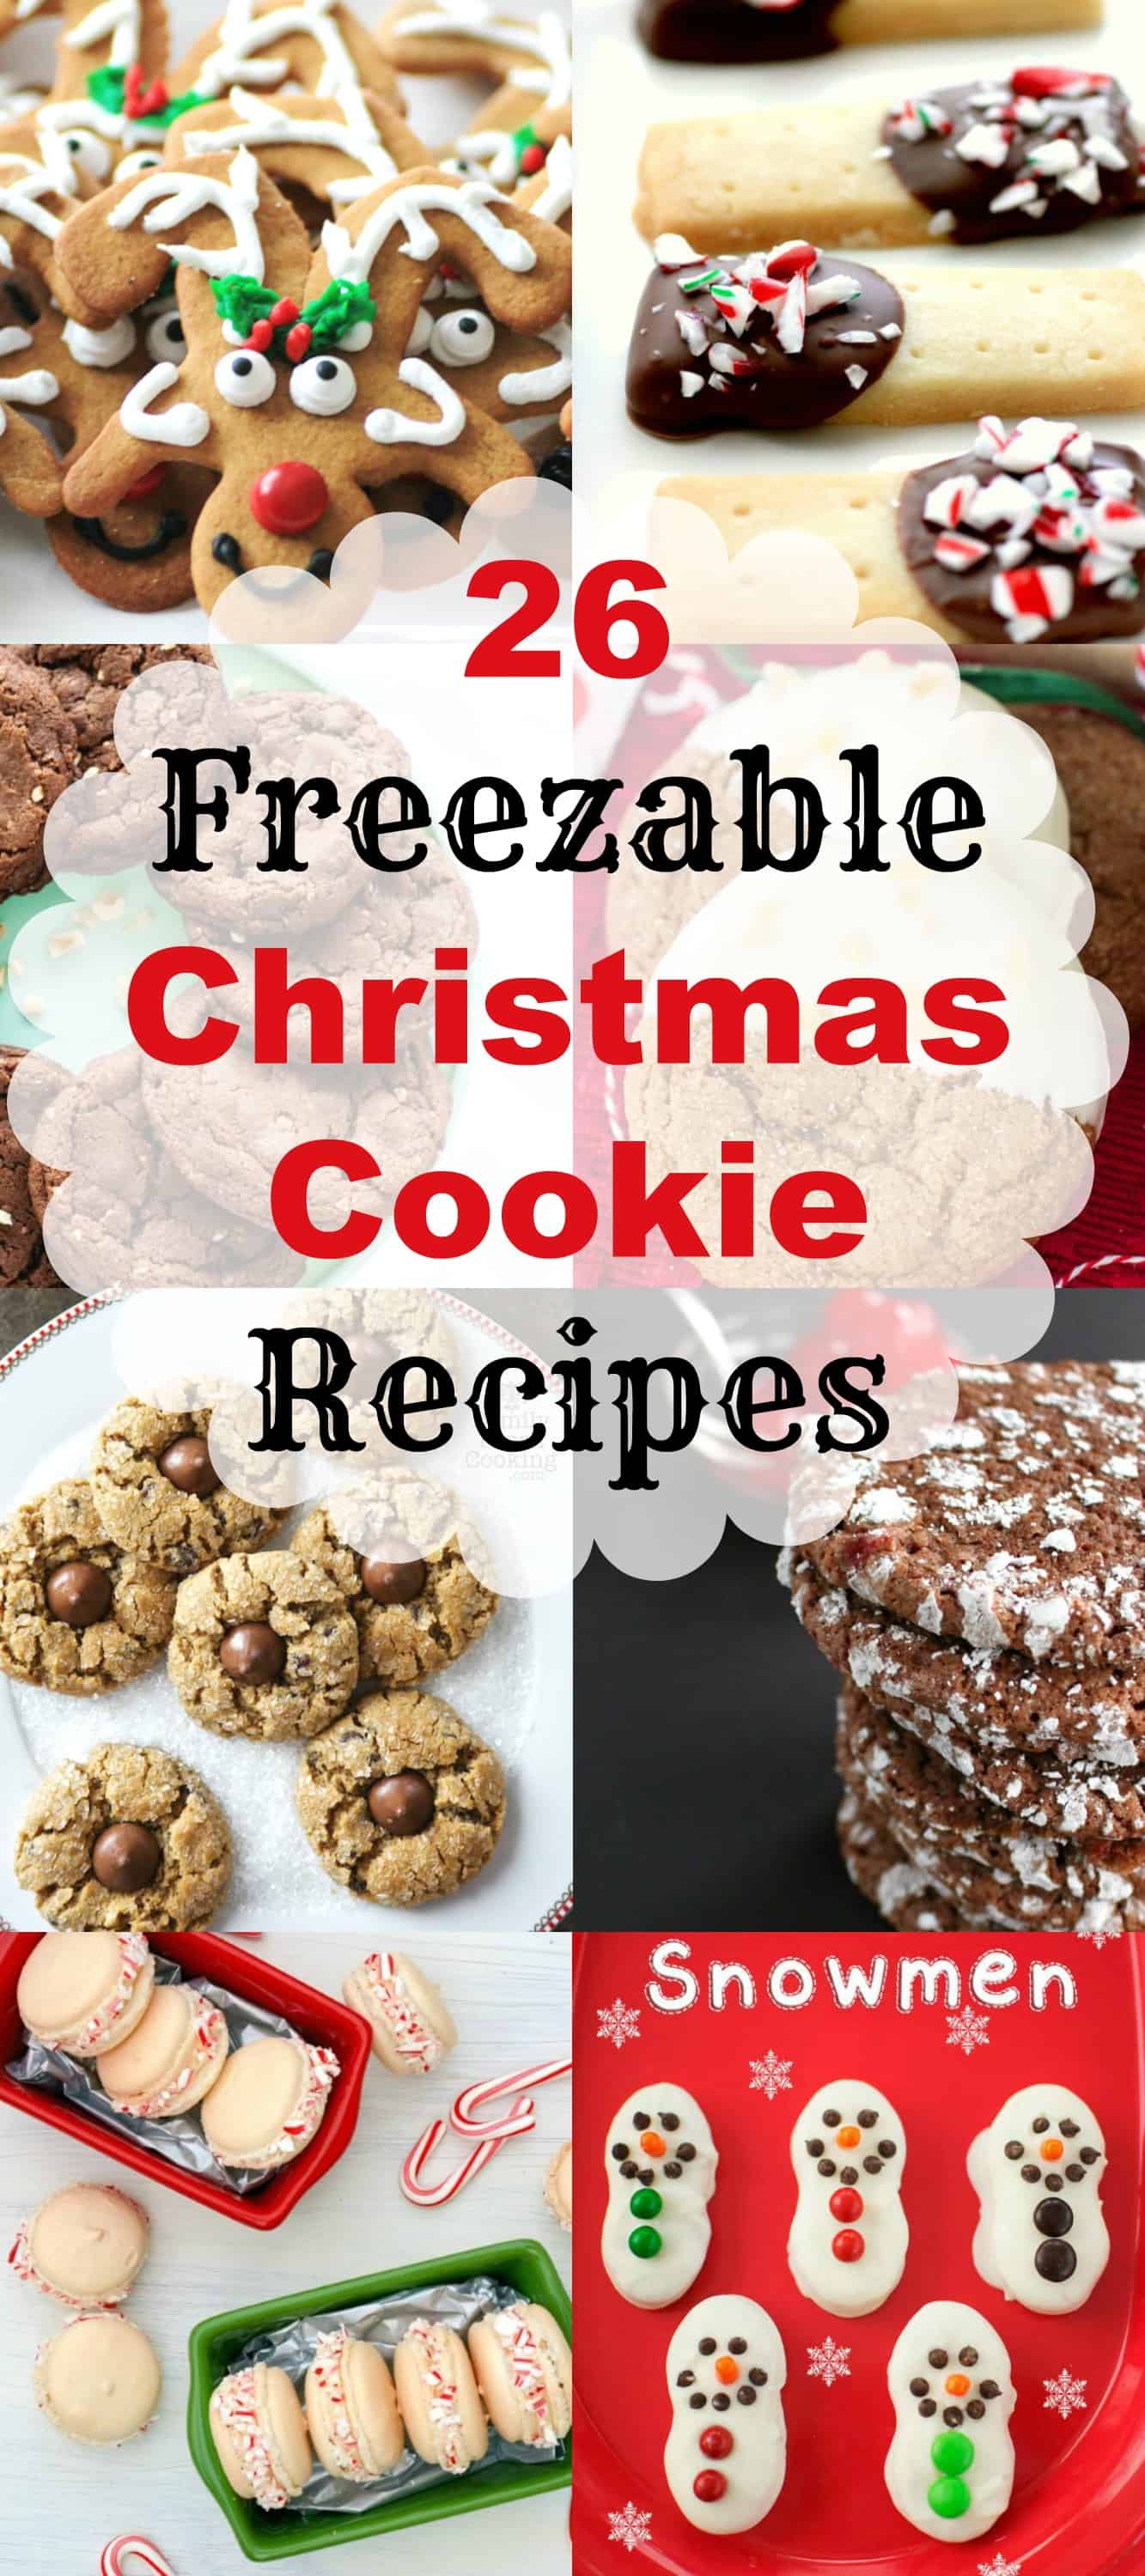 Make-Ahead Cookie Baking Tips: Freezing Cookies